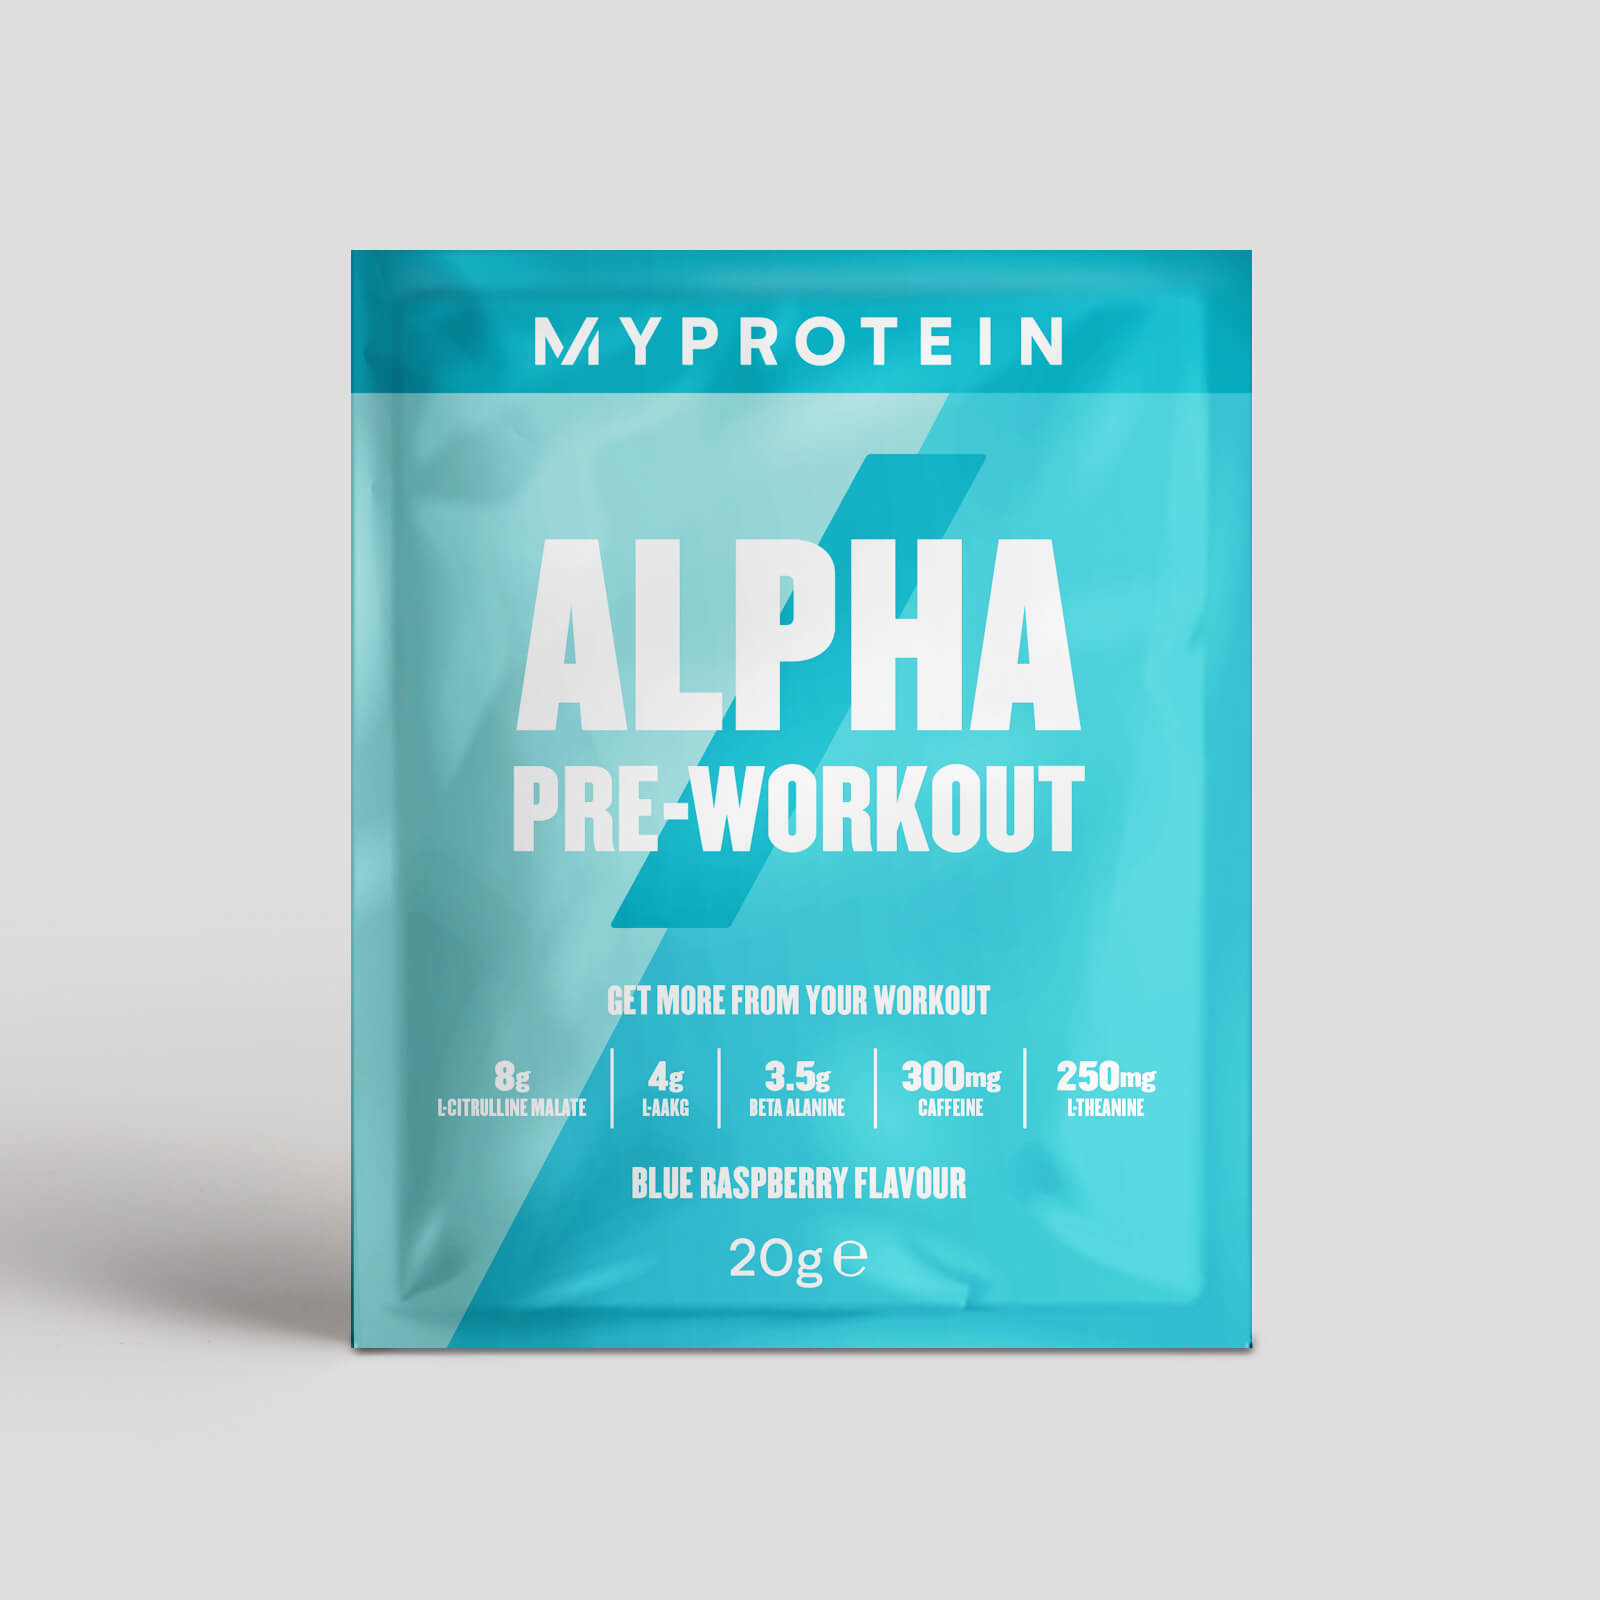 Alpha Pre-Workout - 20g - Framboesa azul